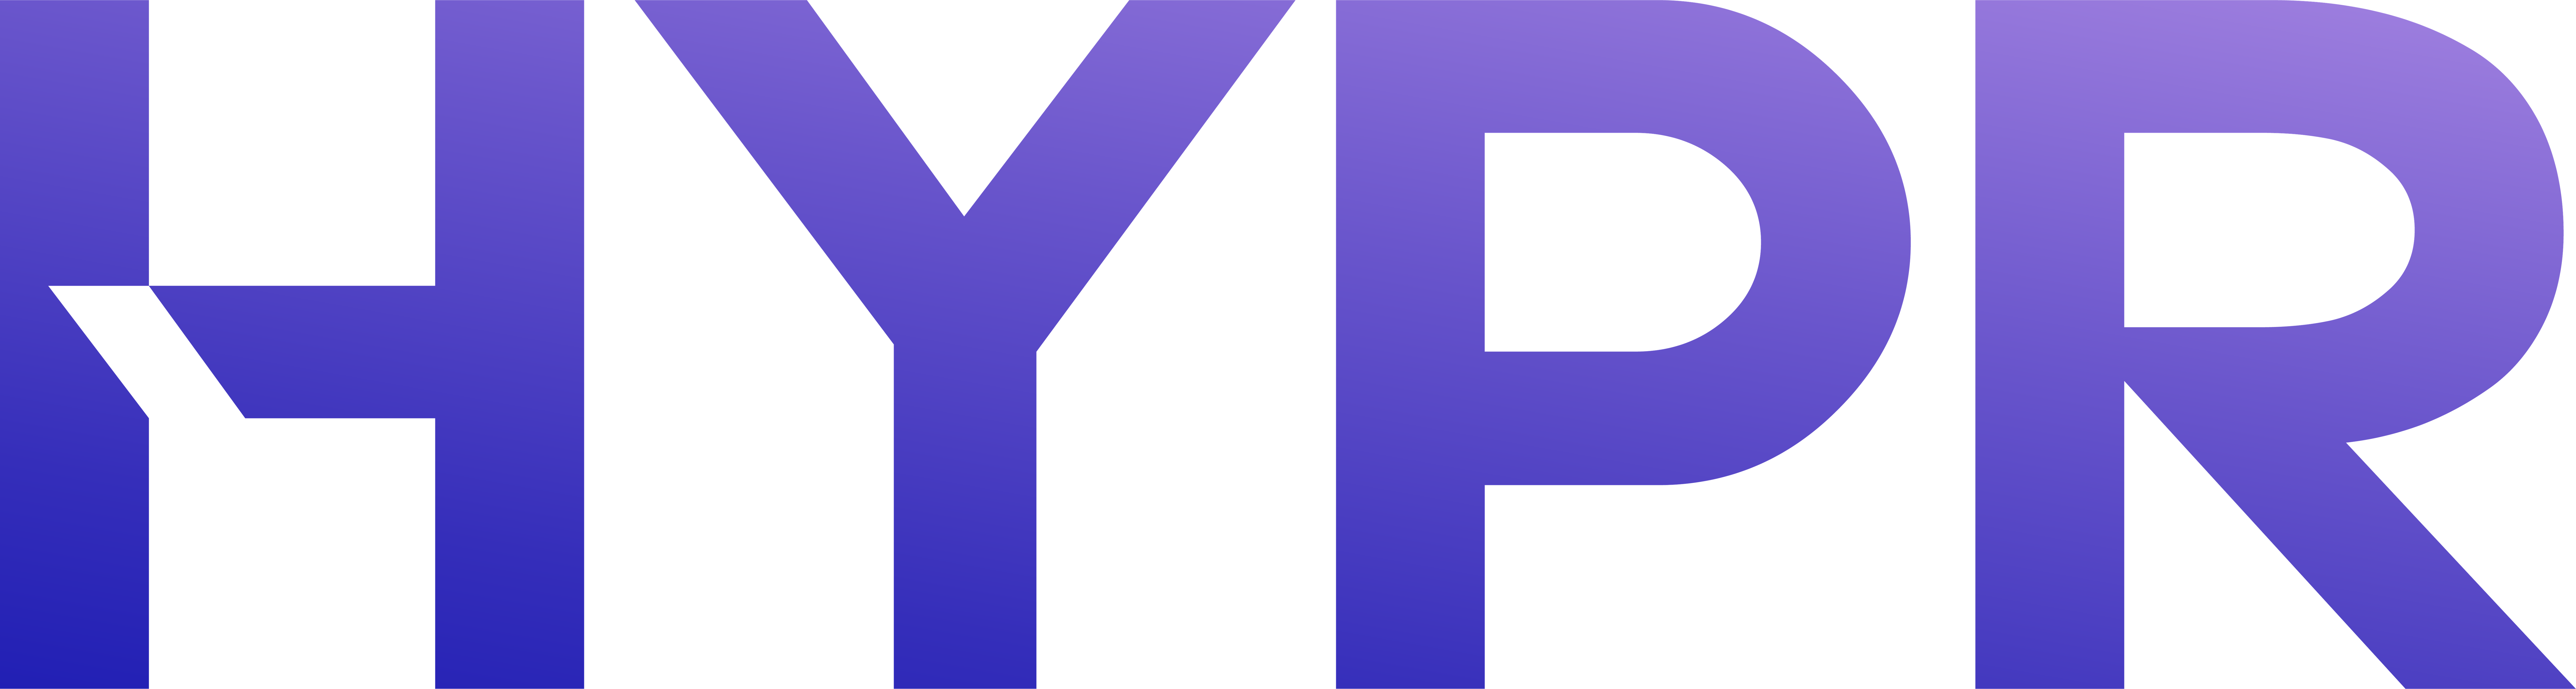 hypr-logo